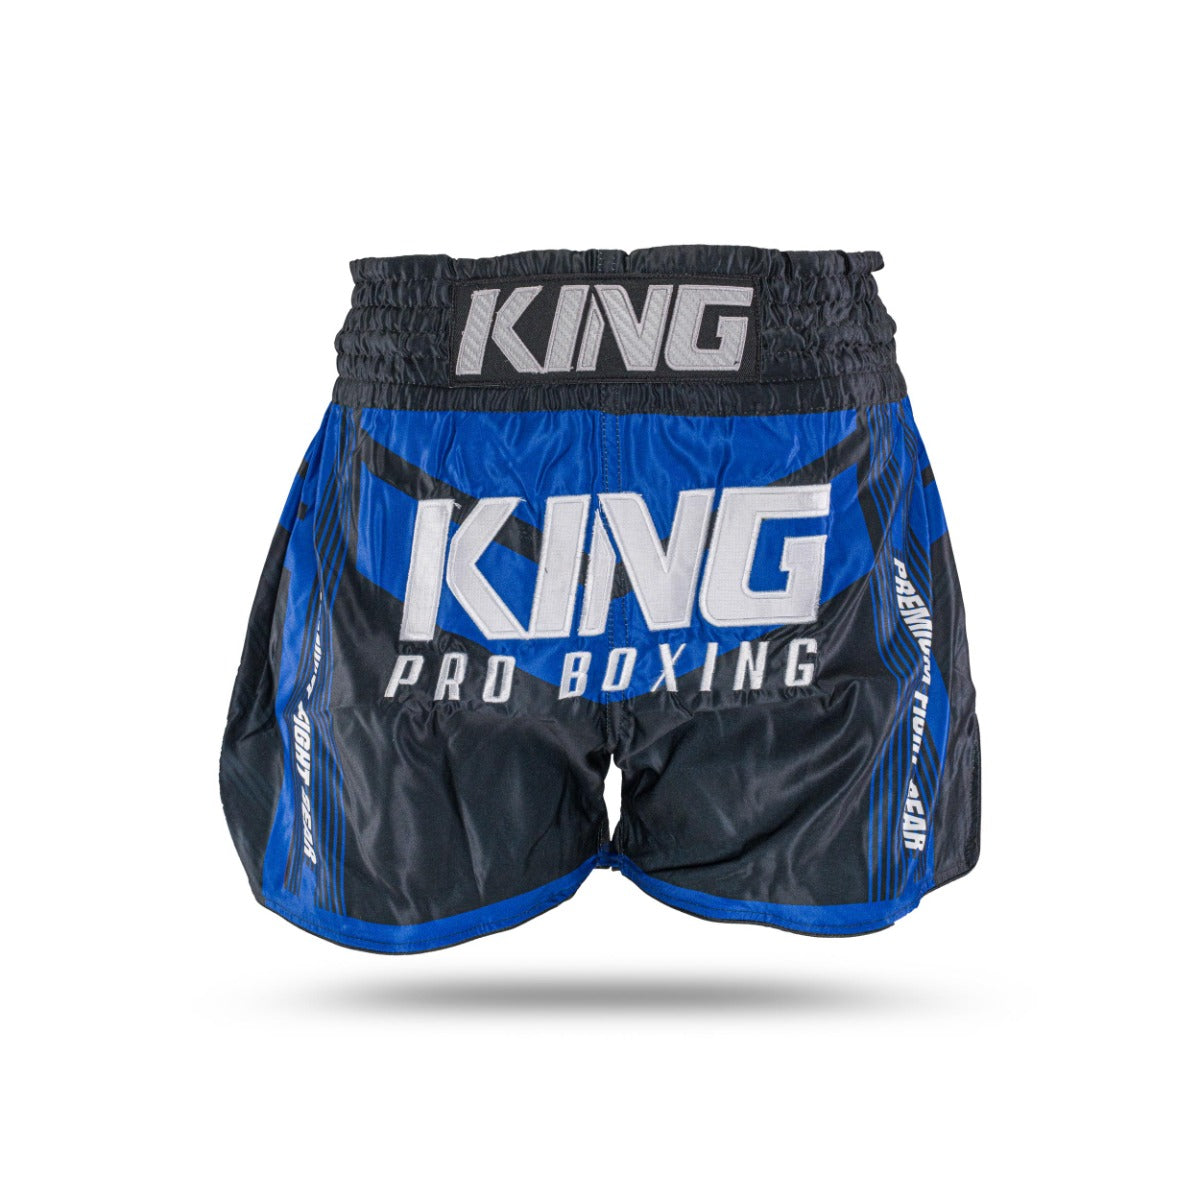 King PRO boxing muay Thai trunk - KPB ENDURANCE 5